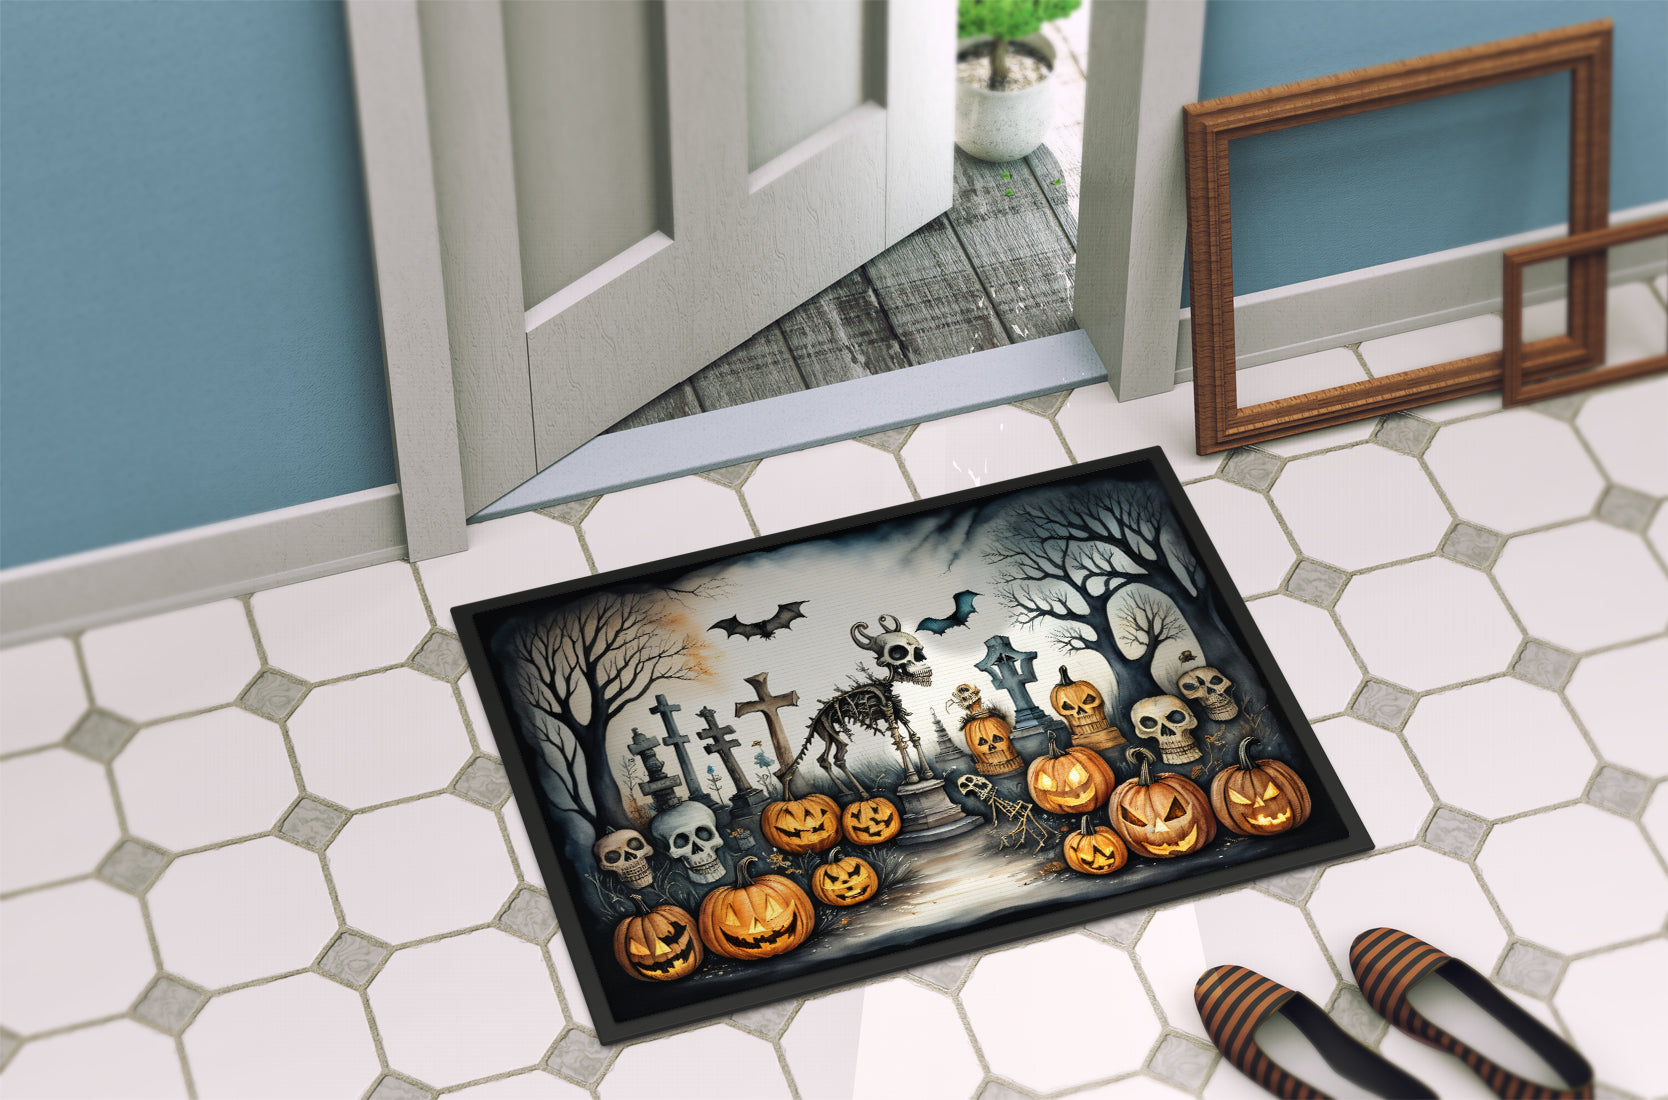 Pet Cemetery Spooky Halloween Doormat 18x27